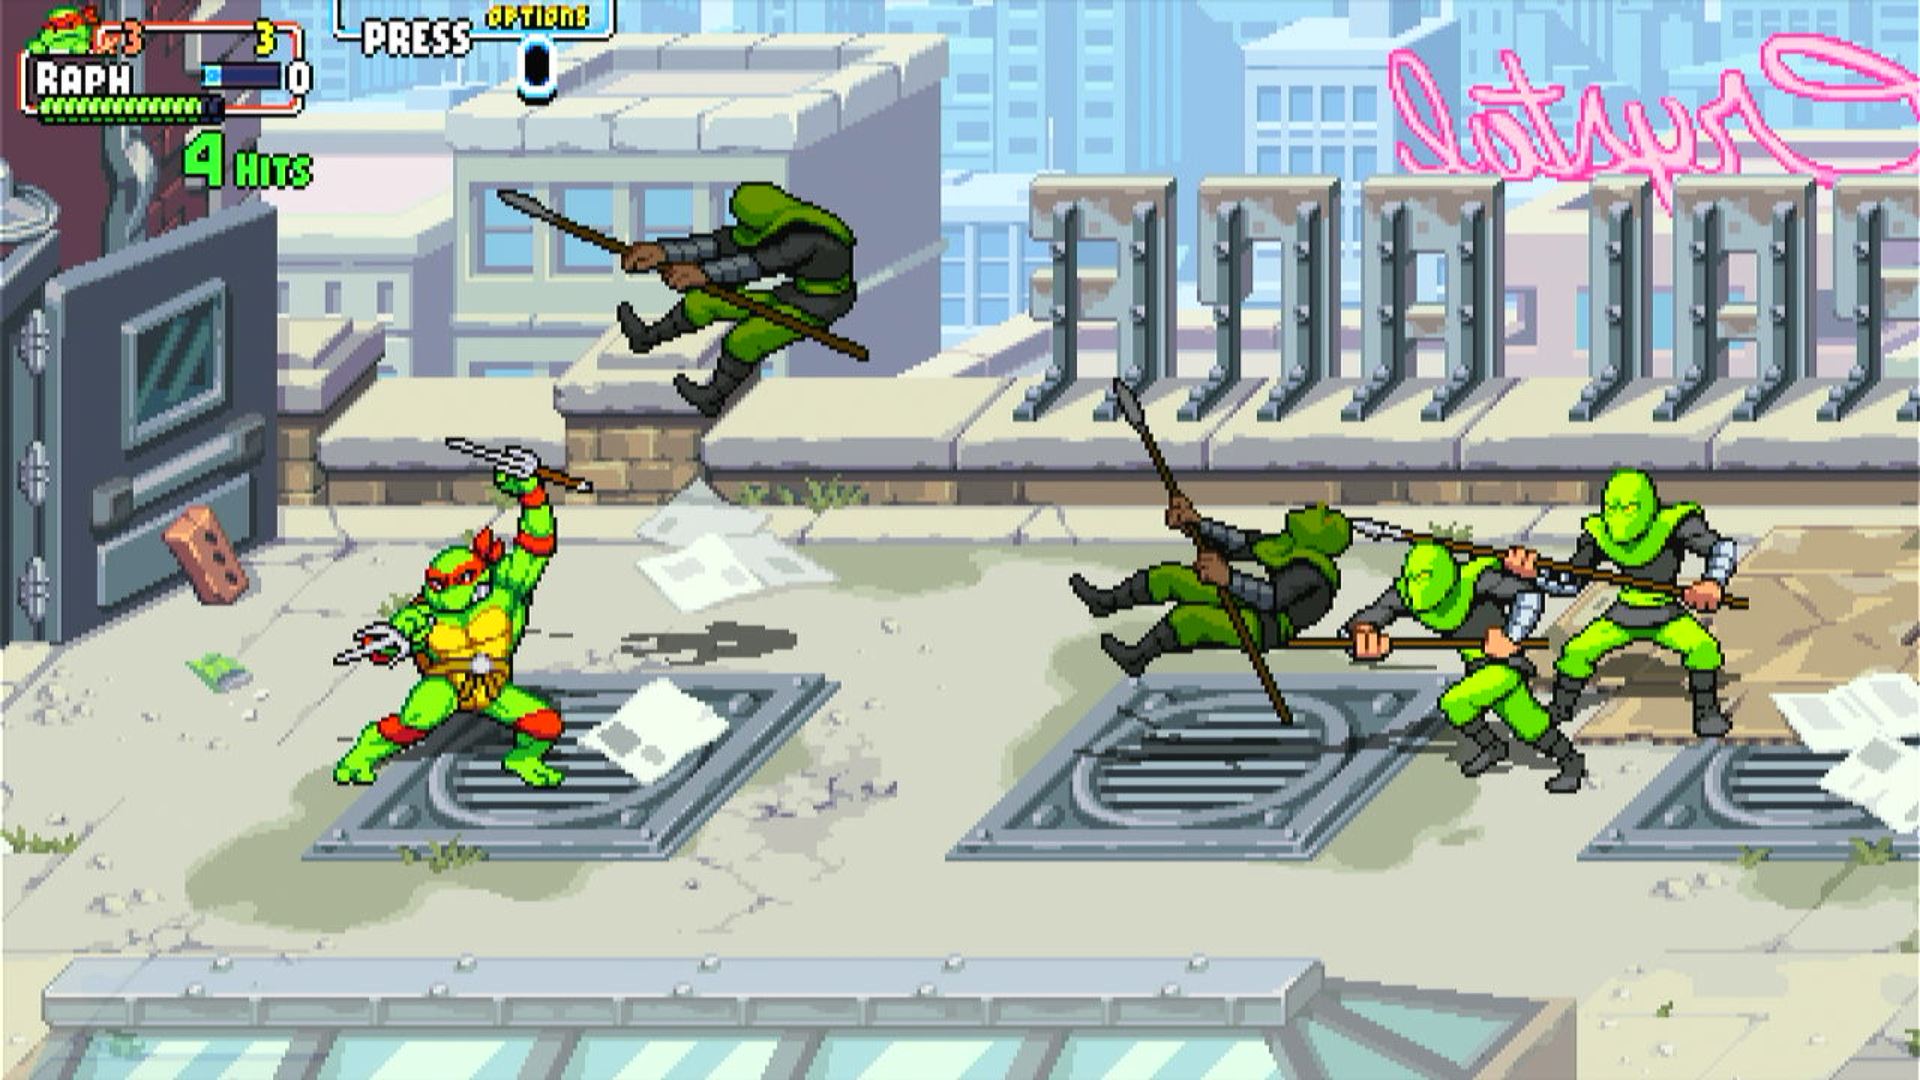 Klan Stopy zrobi wszystko, by powstrzymać Wojownicze Żółwie Ninja!